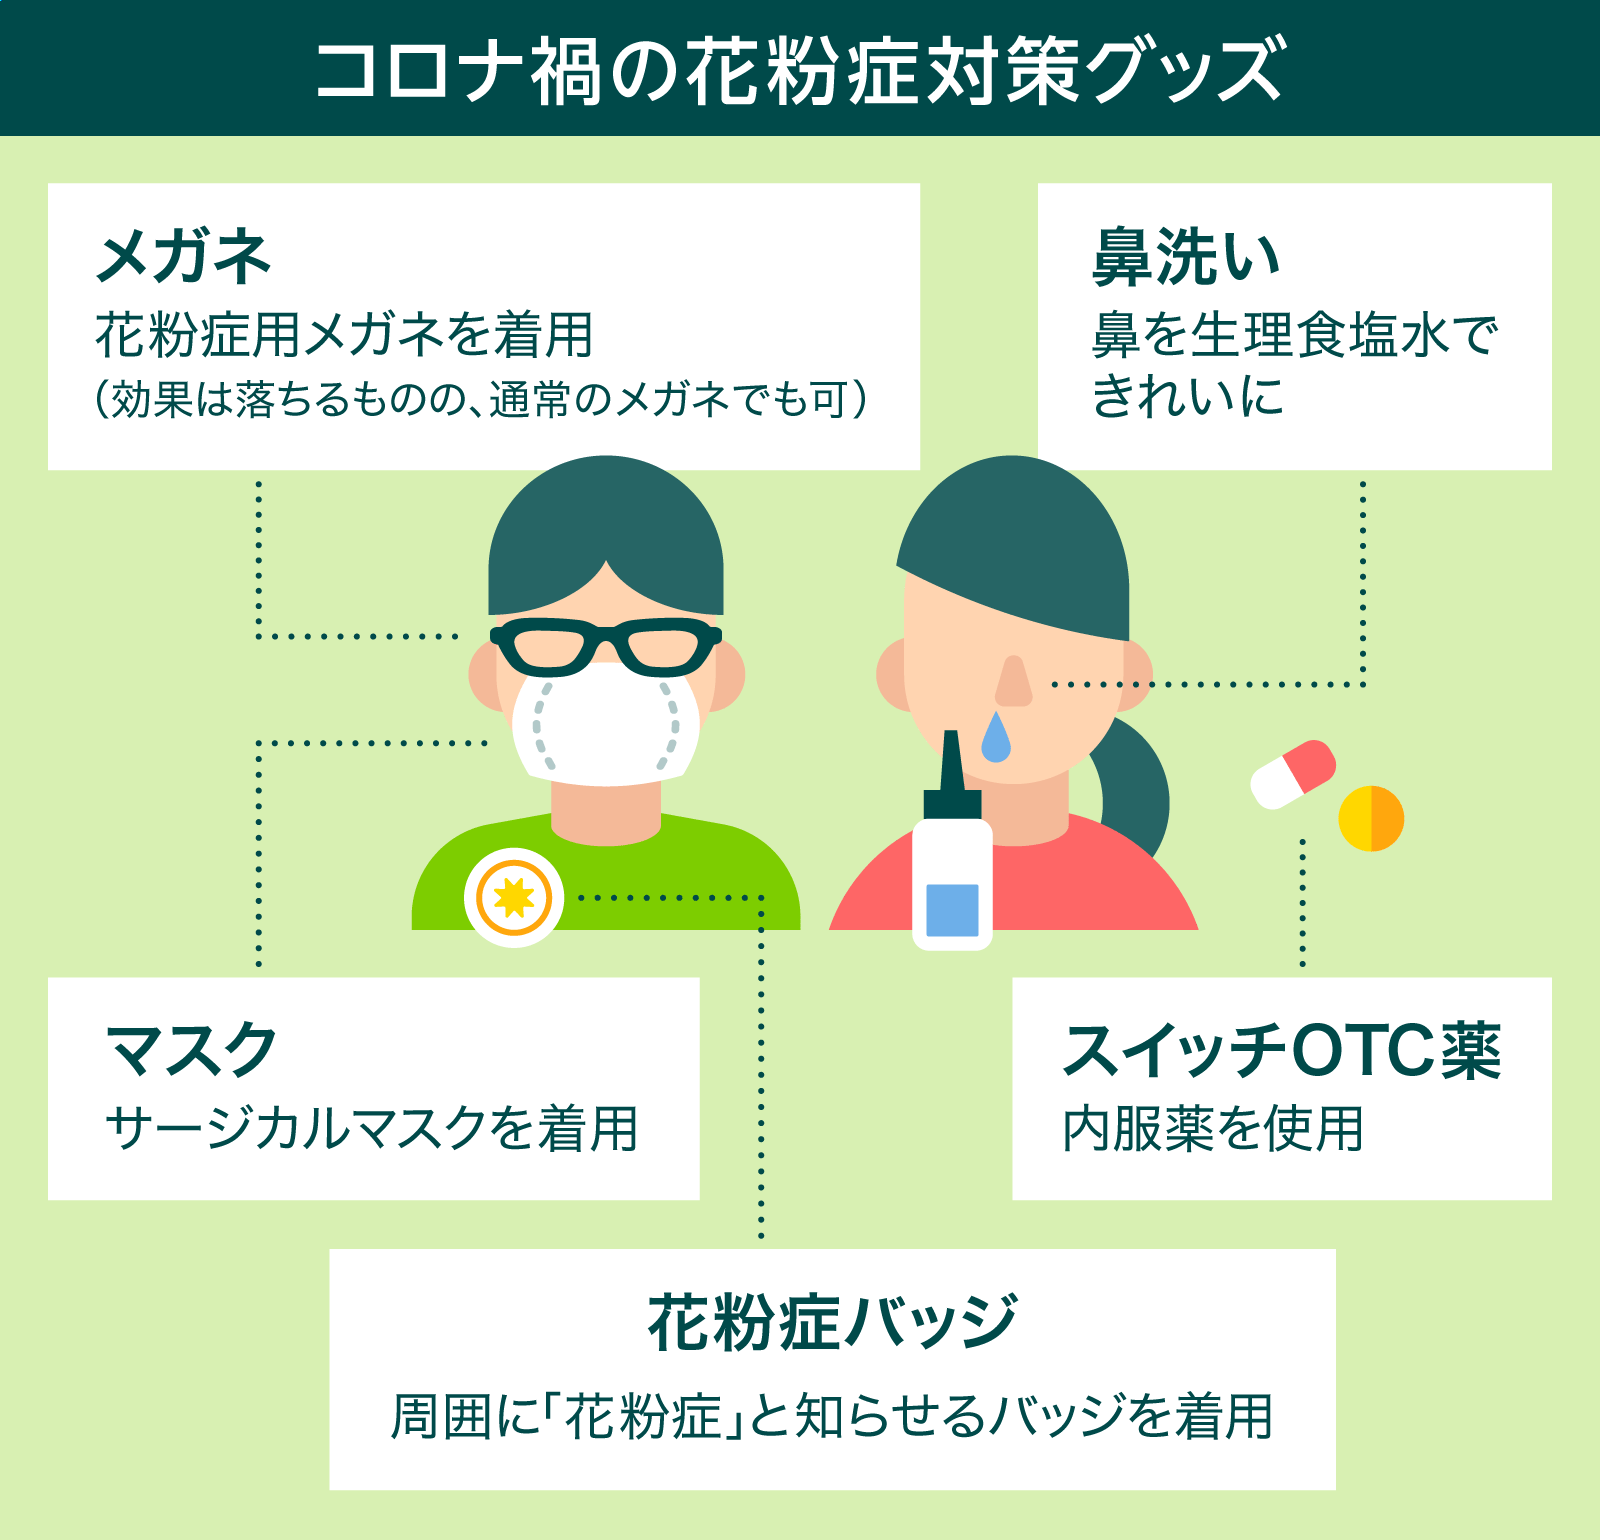 コロナ禍での花粉症対策をわかりやすく解説 Yahoo Japan